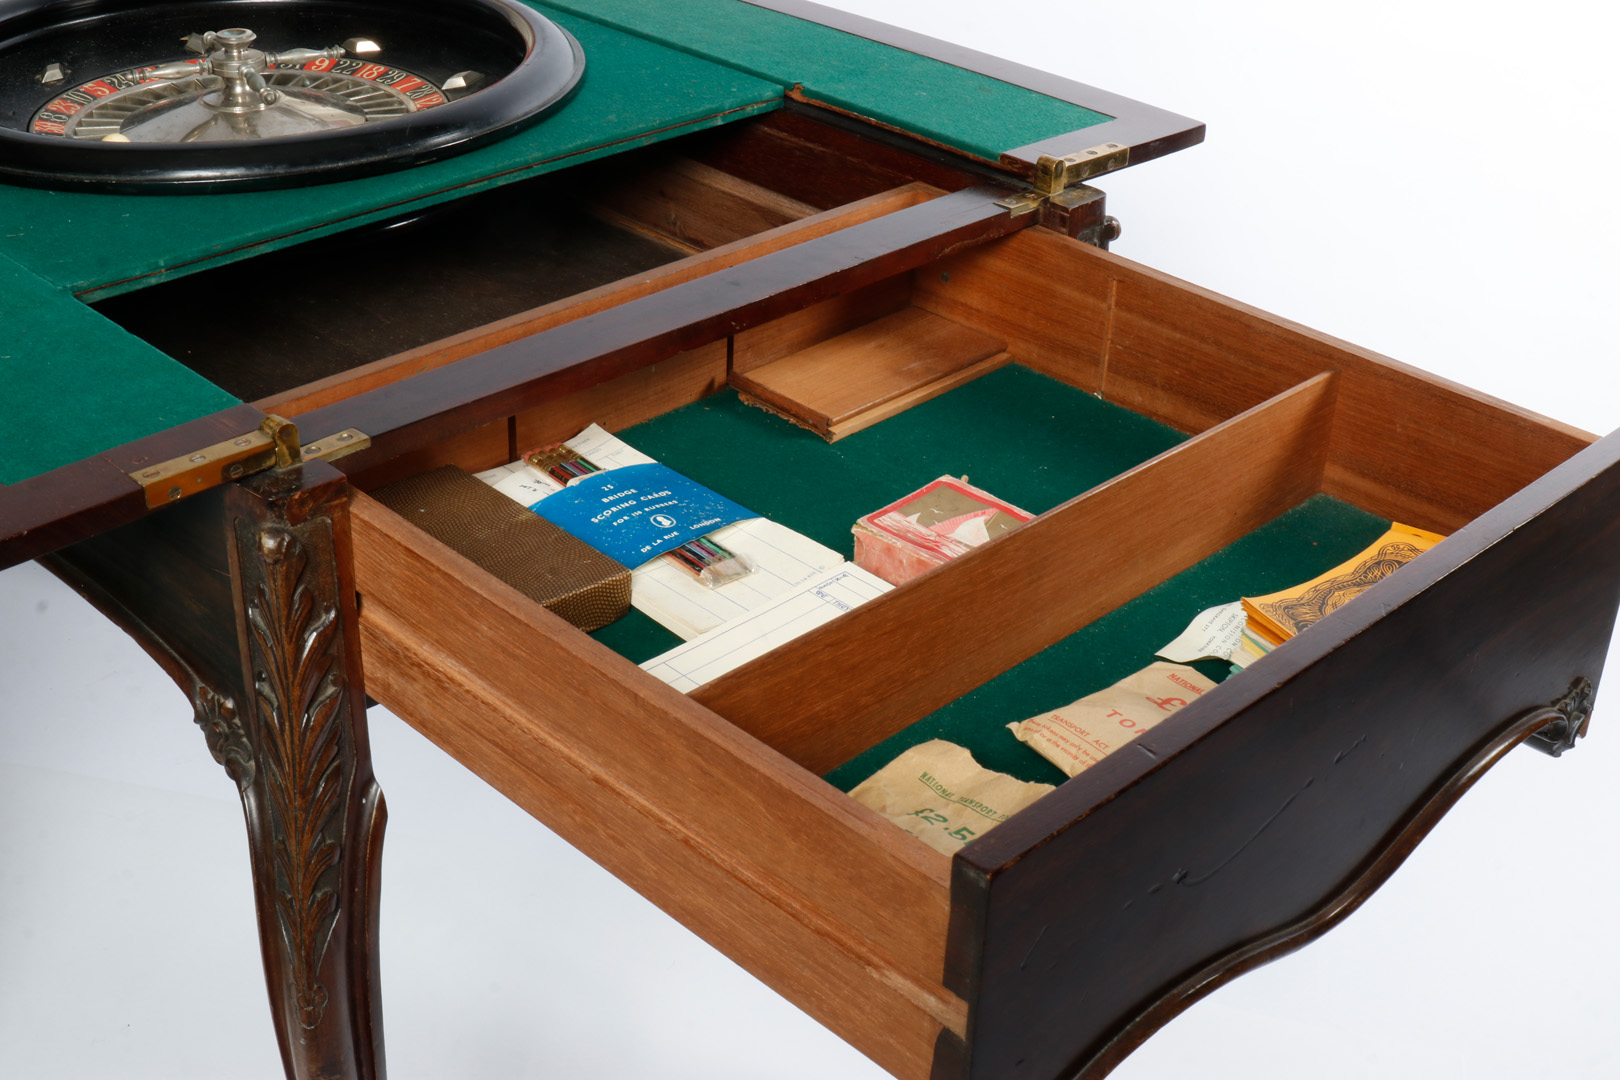 Großer Mahagoni-Spieltisch, aufklappbar, für Roulette-Spiel, grün befilzt, mit Drehteller, Kugel, - Image 7 of 7